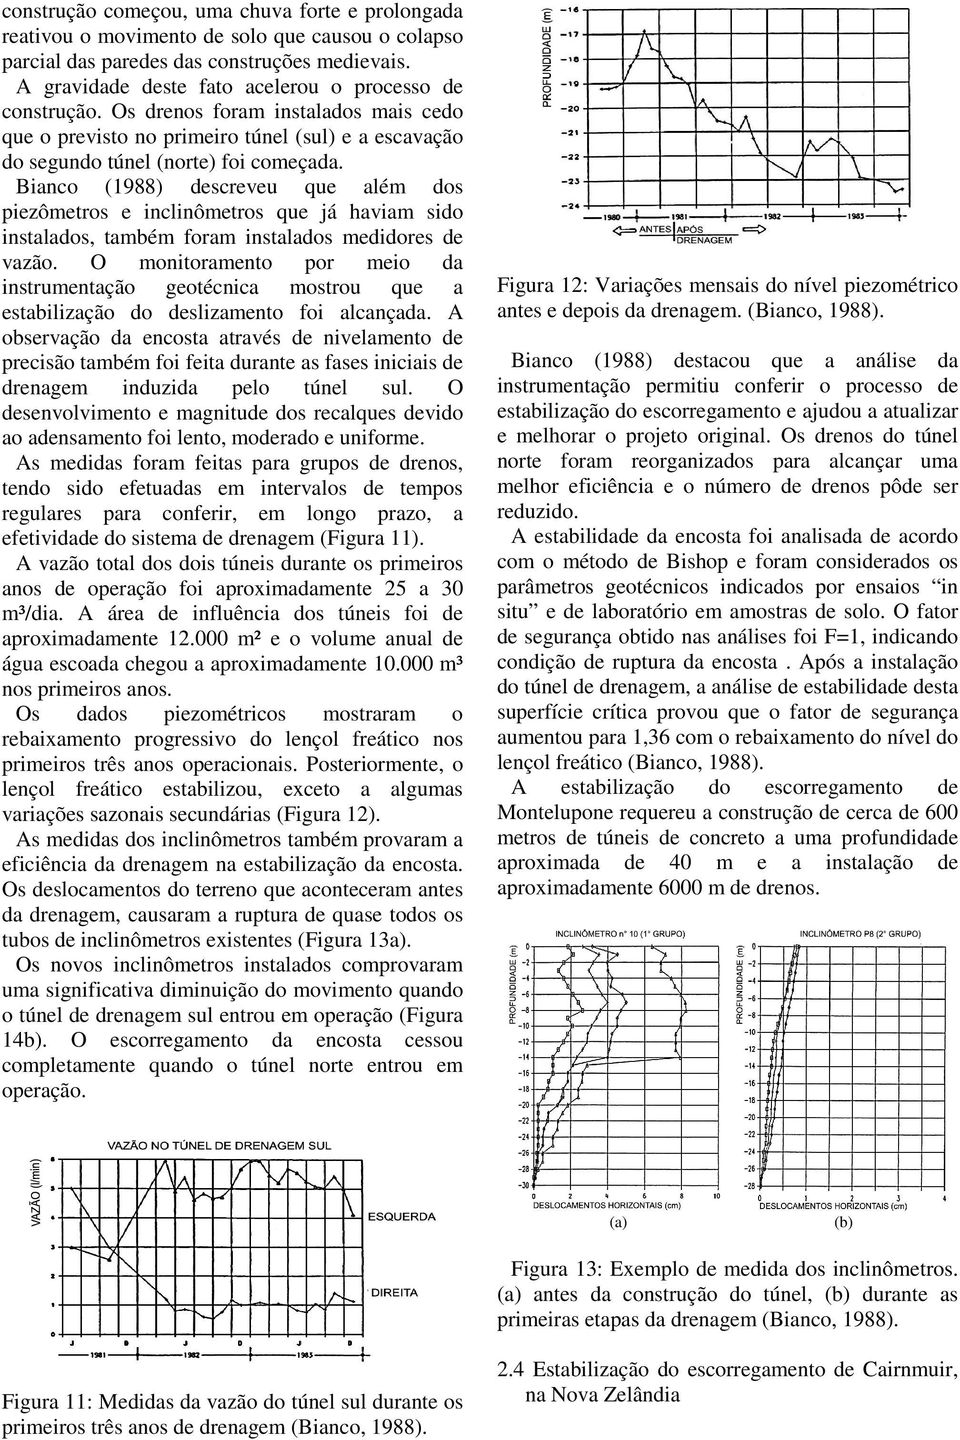 Bianco (1988) descreveu que além dos piezômetros e inclinômetros que já haviam sido instalados, também foram instalados medidores de vazão.